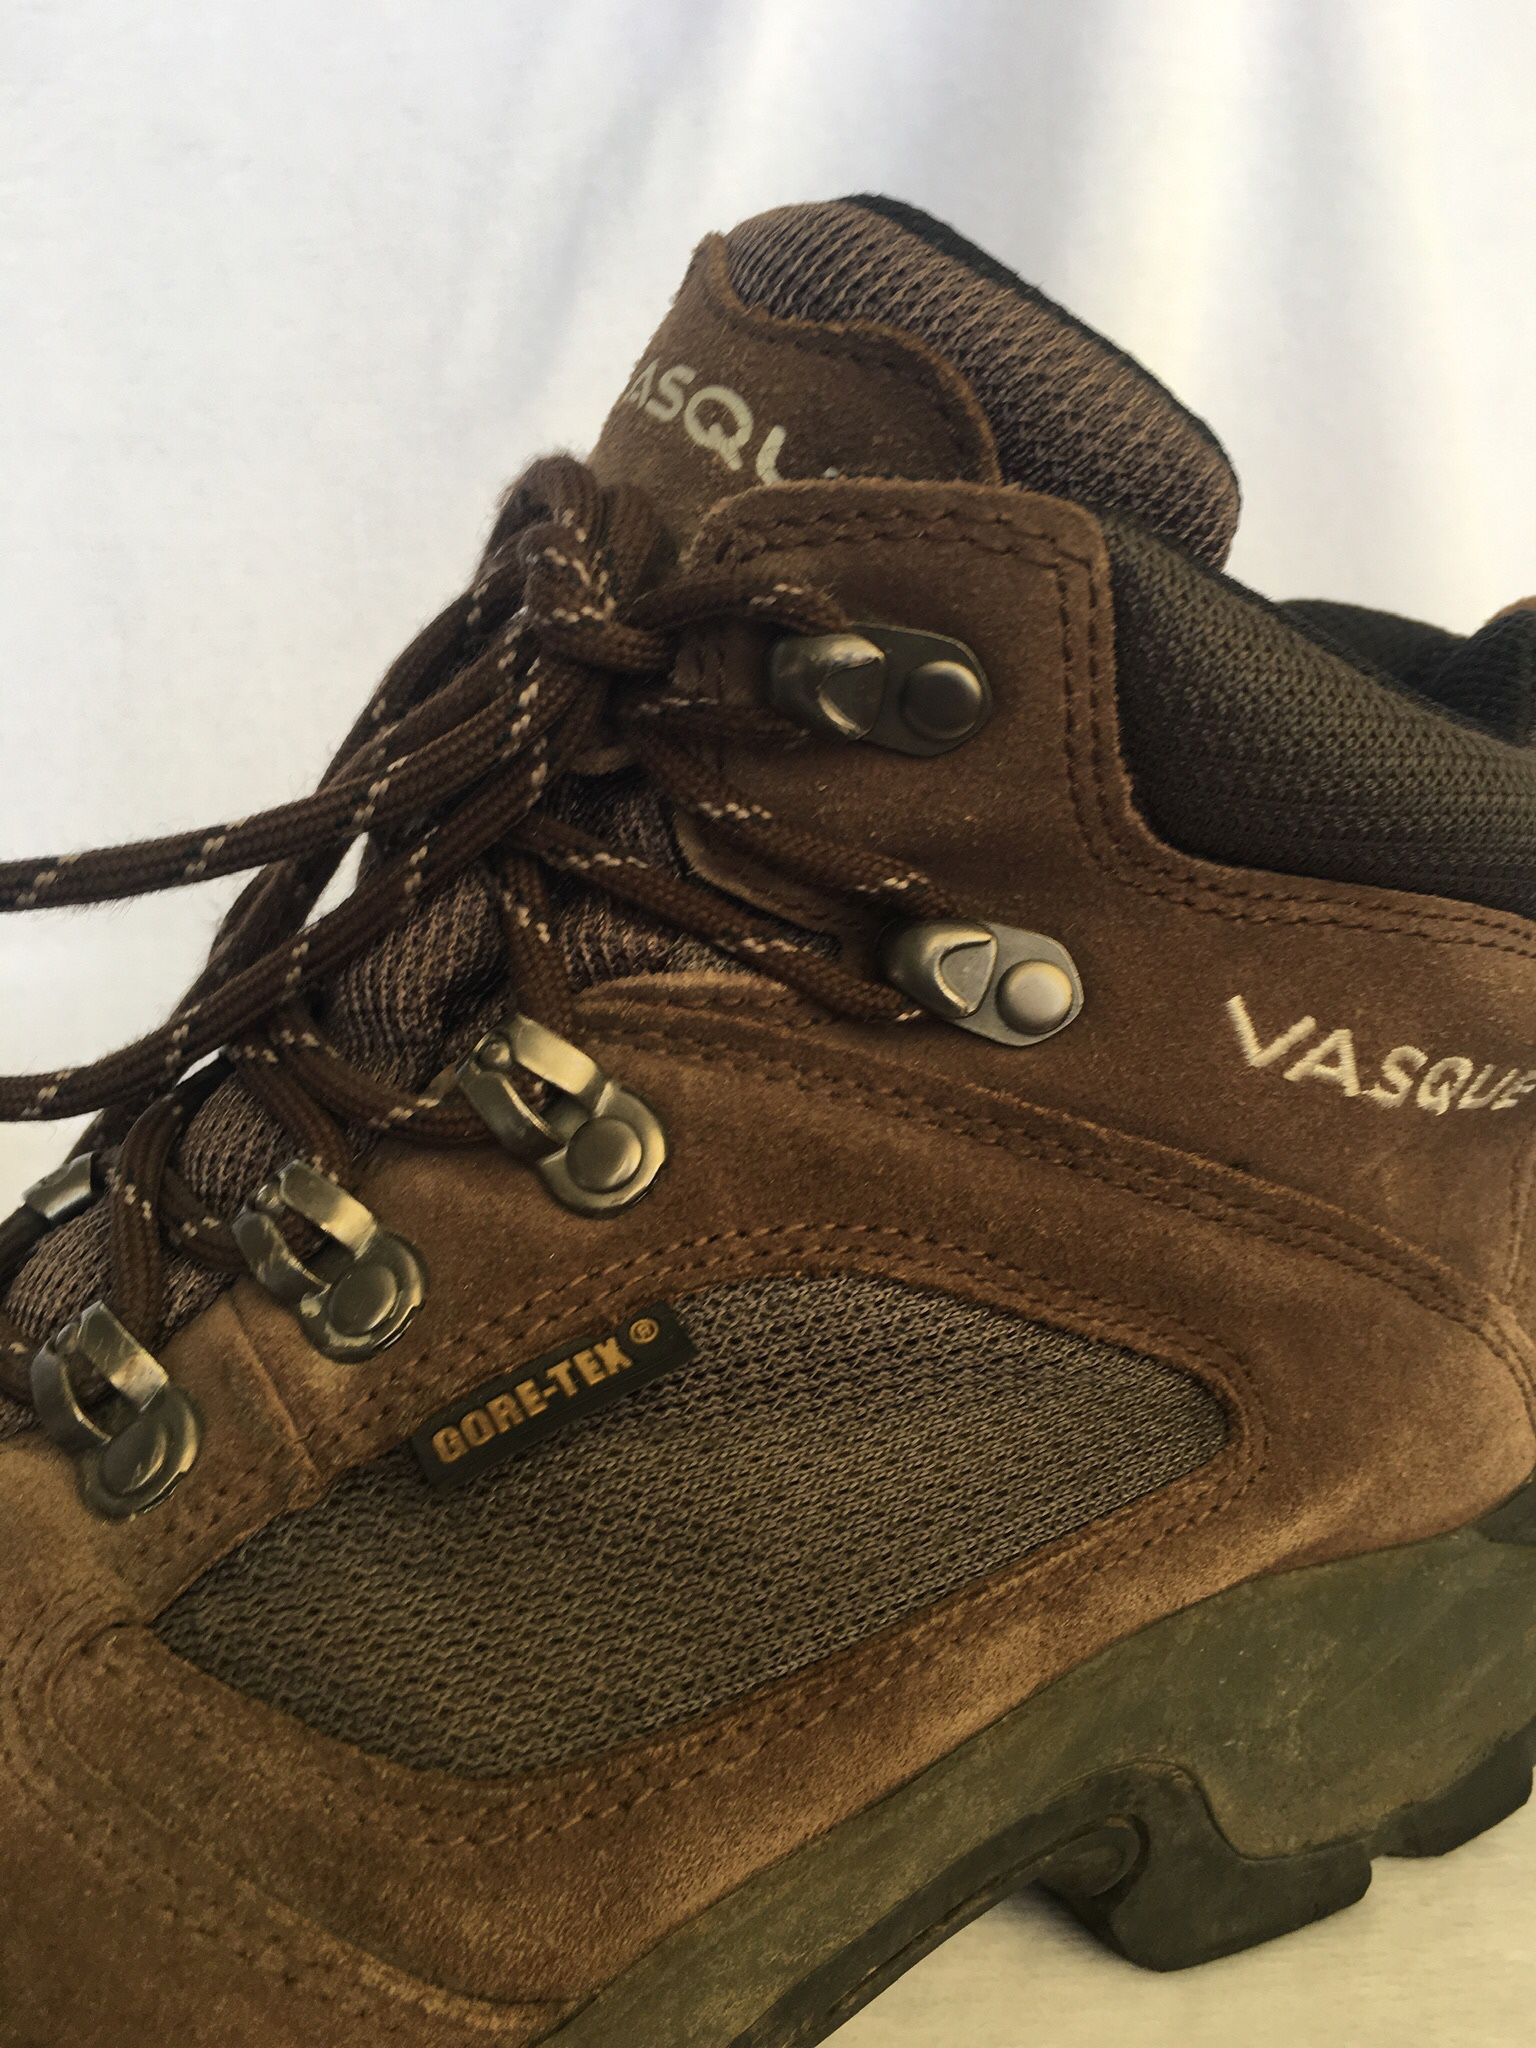 Vasque Men's Ranger II GTX Hiking Boots